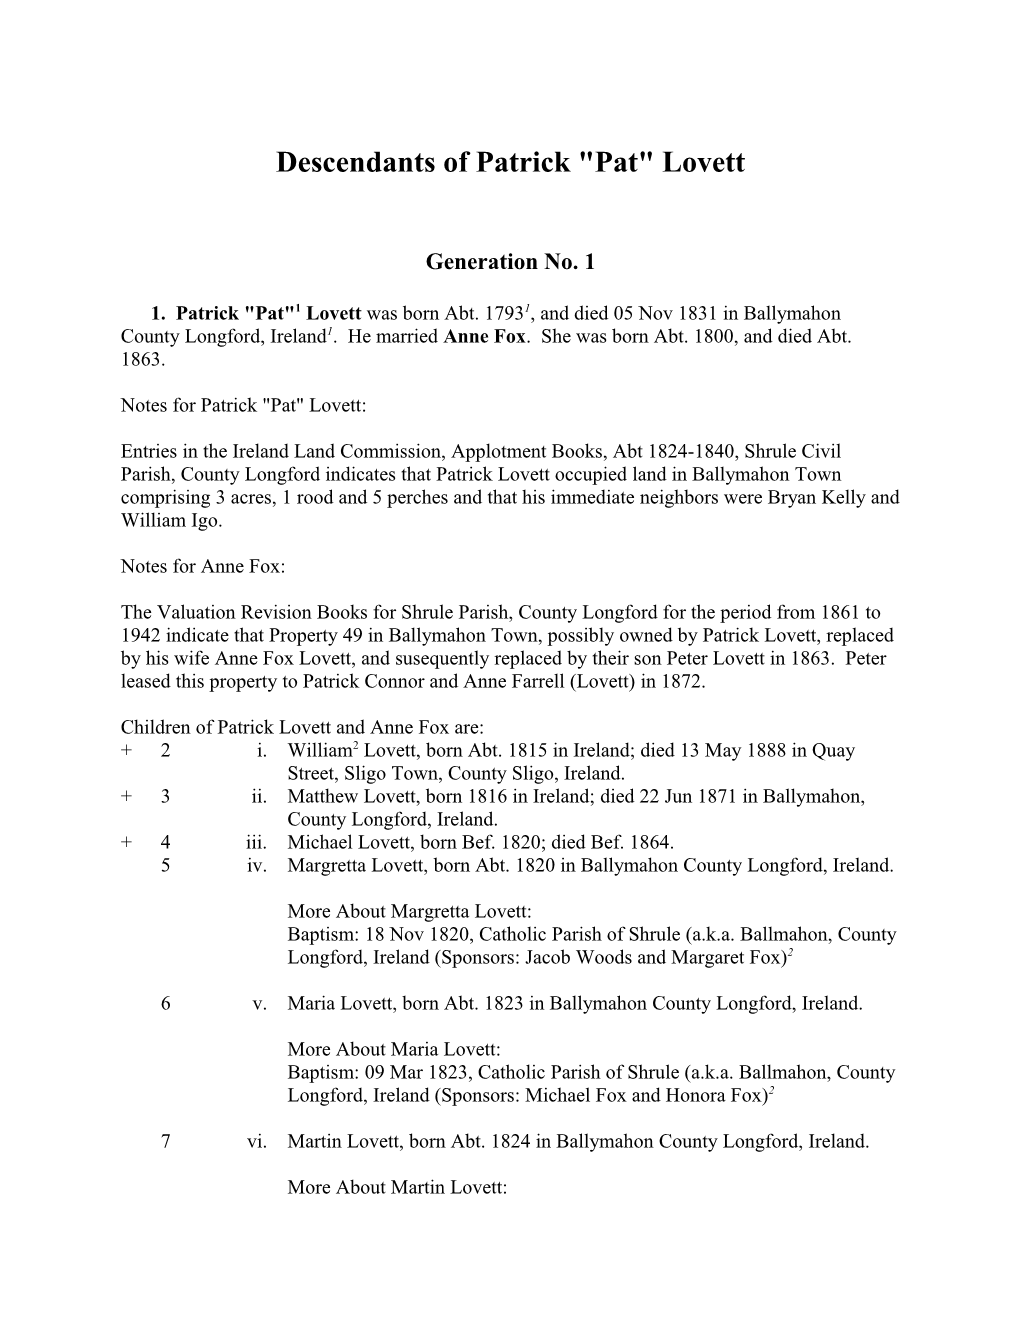 Descendants of Patrick Pat Lovett